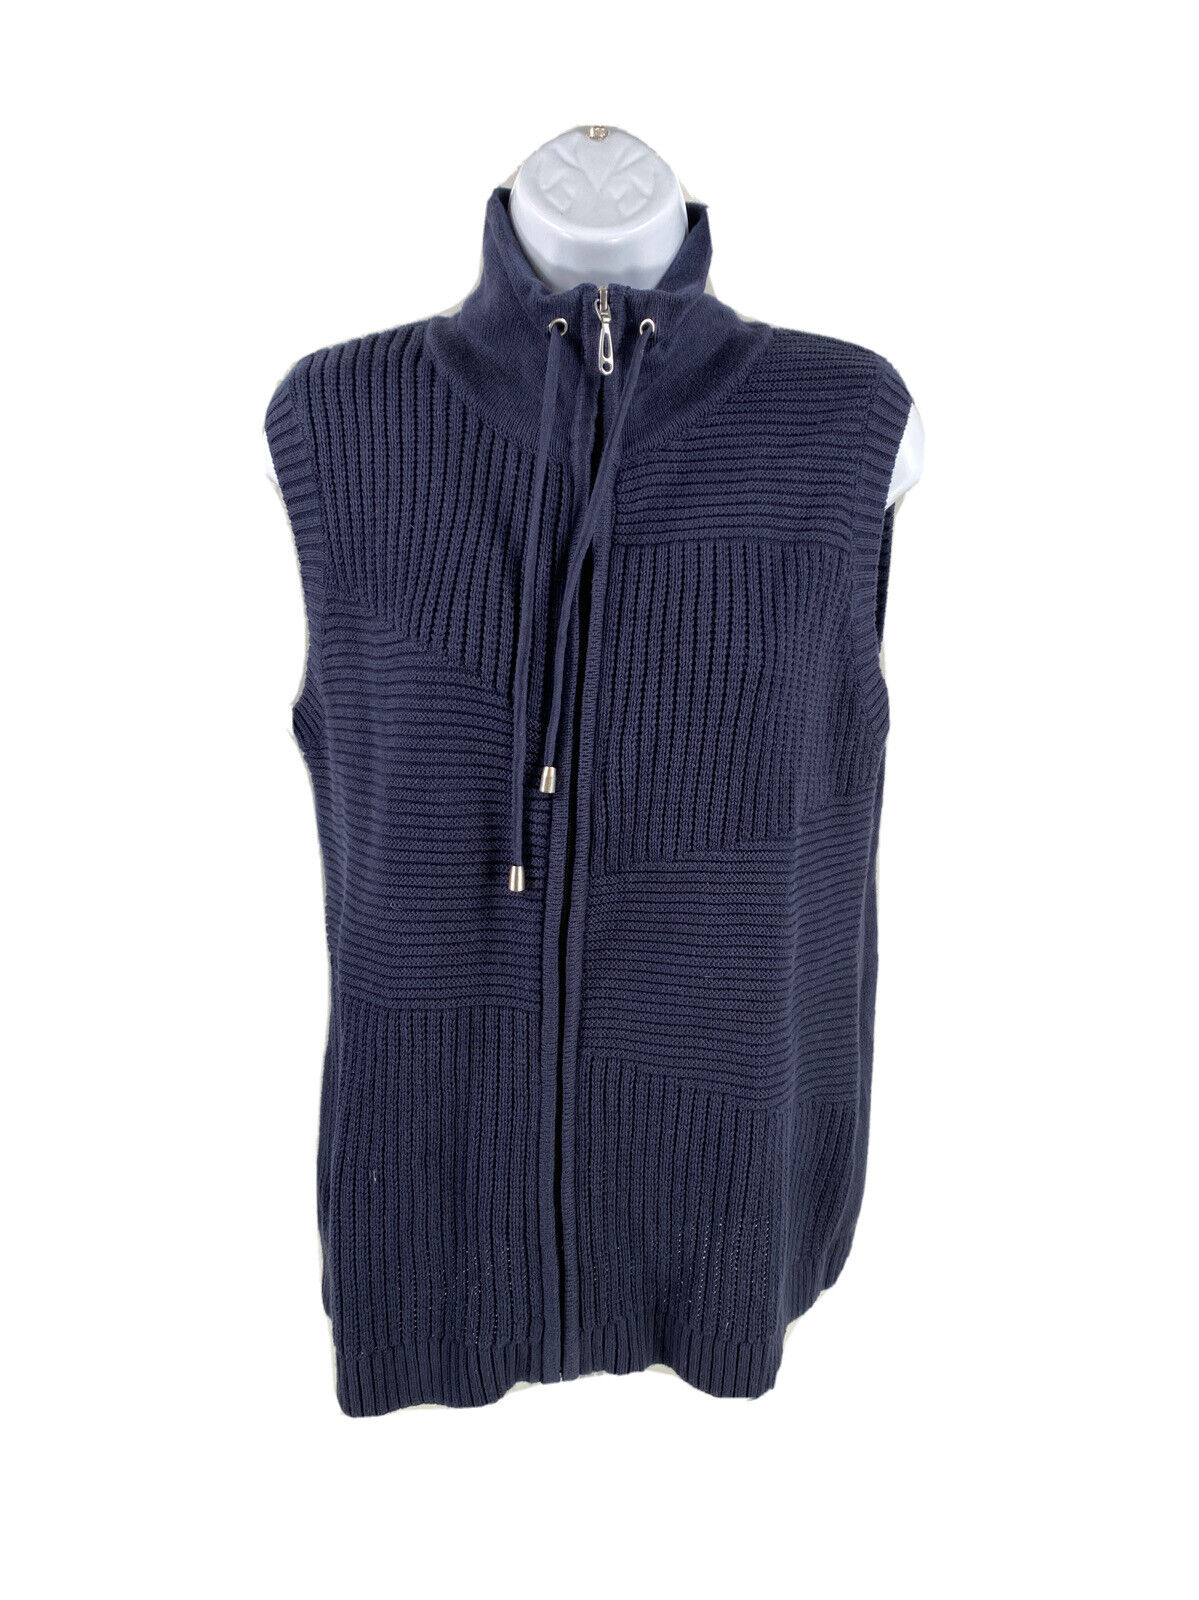 NEW Christopher & Banks Women's Blue Sleeveless Full Zip Sweater Vest - M